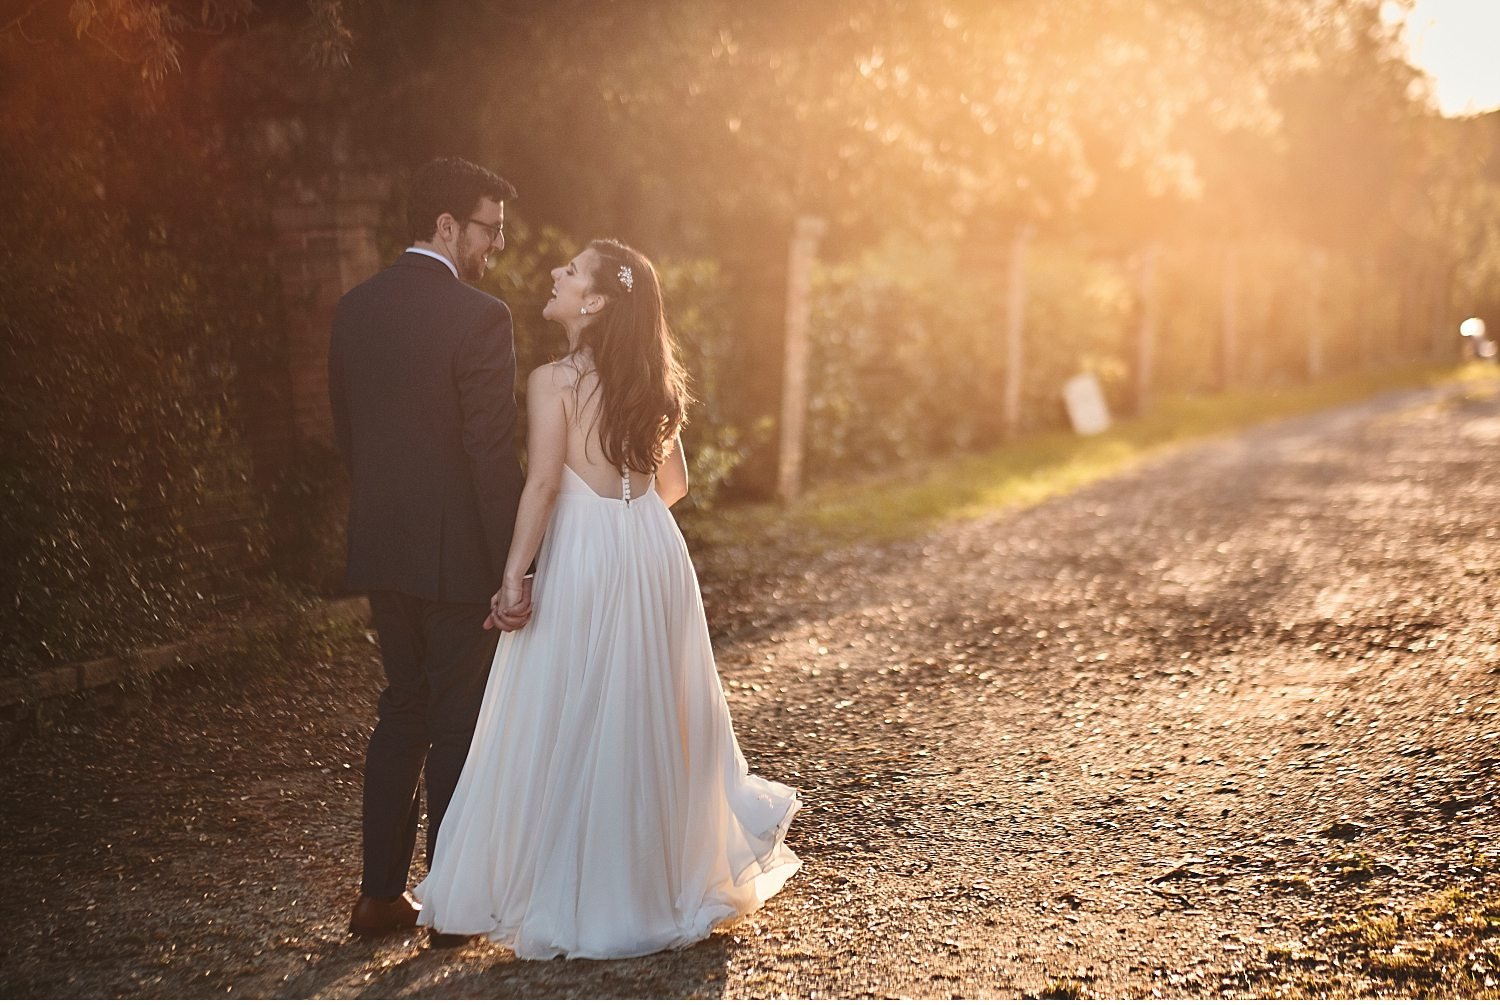  Elegante matrimonio in Toscana nel giardino di una villa Cini ad Arezzo - Immortalate il vostro giorno speciale con questa splendida foto di un matrimonio incantevole in una delle più belle ville toscane. La cerimonia nel giardino sottolinea l'atmos